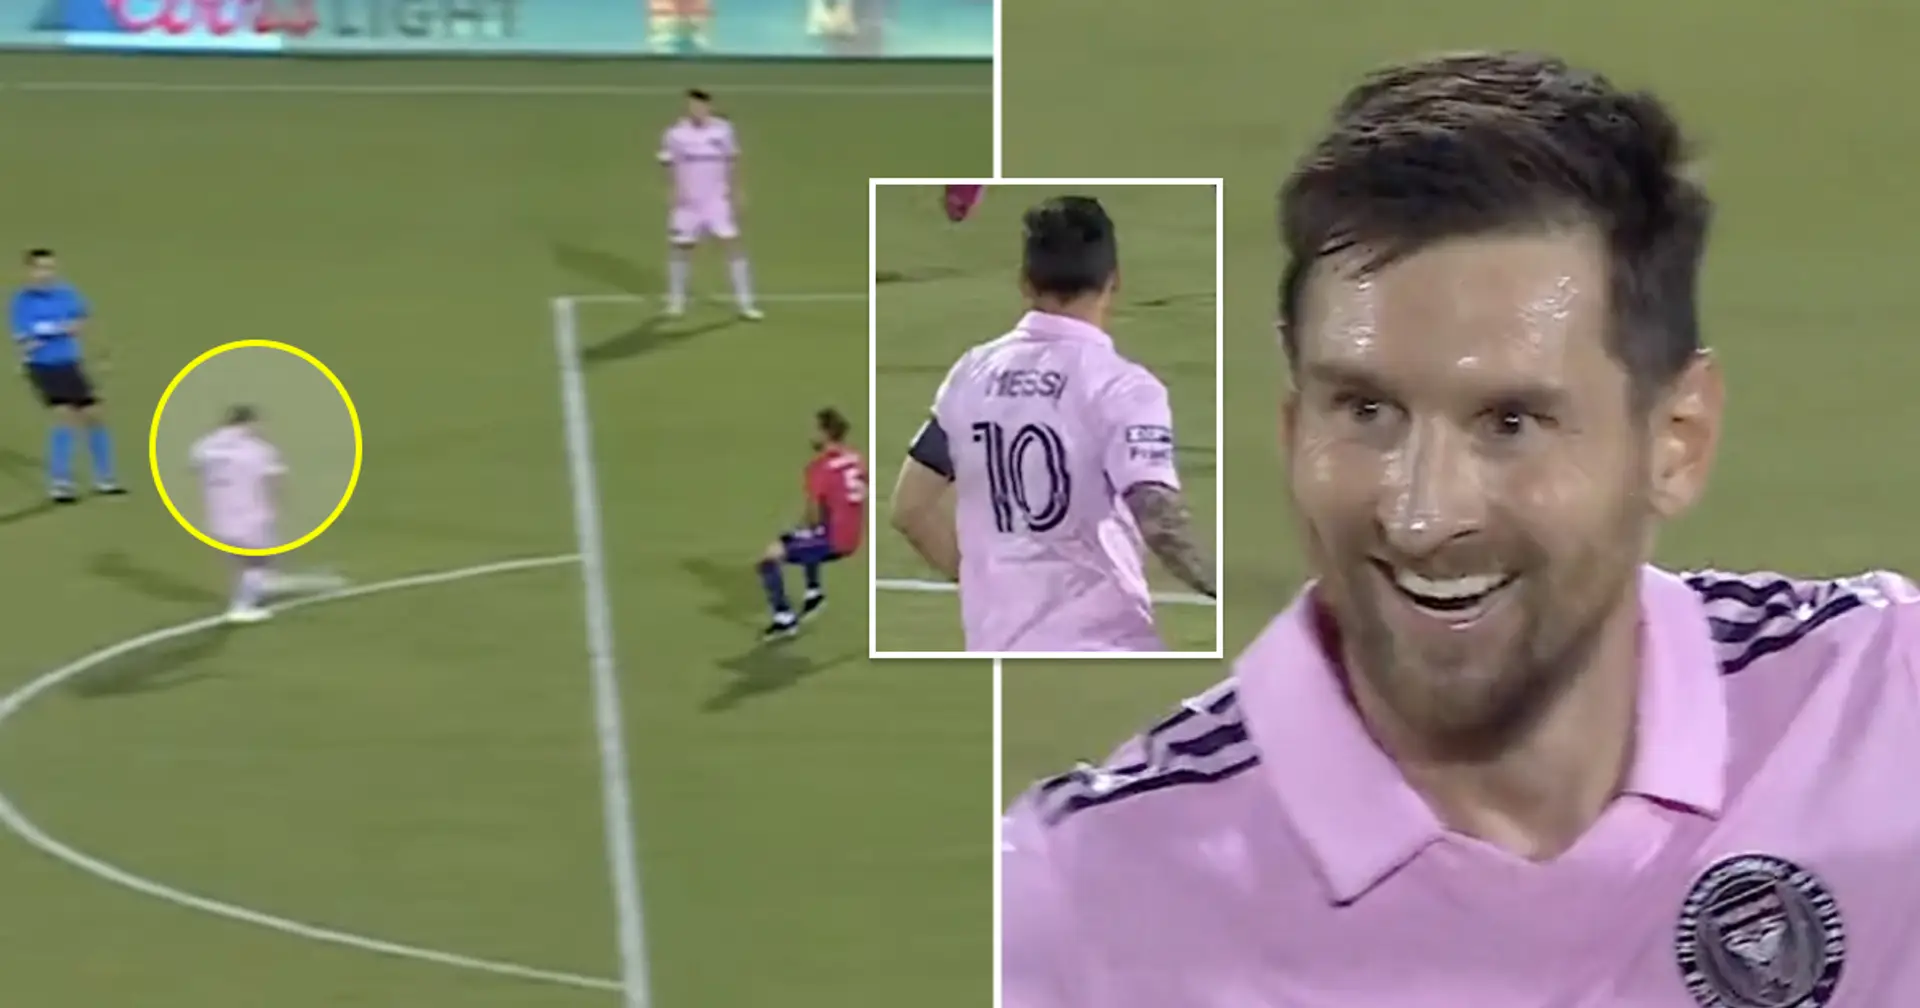 Les débuts tant attendus de Messi en MLS devront attendre car le report du match est confirmé